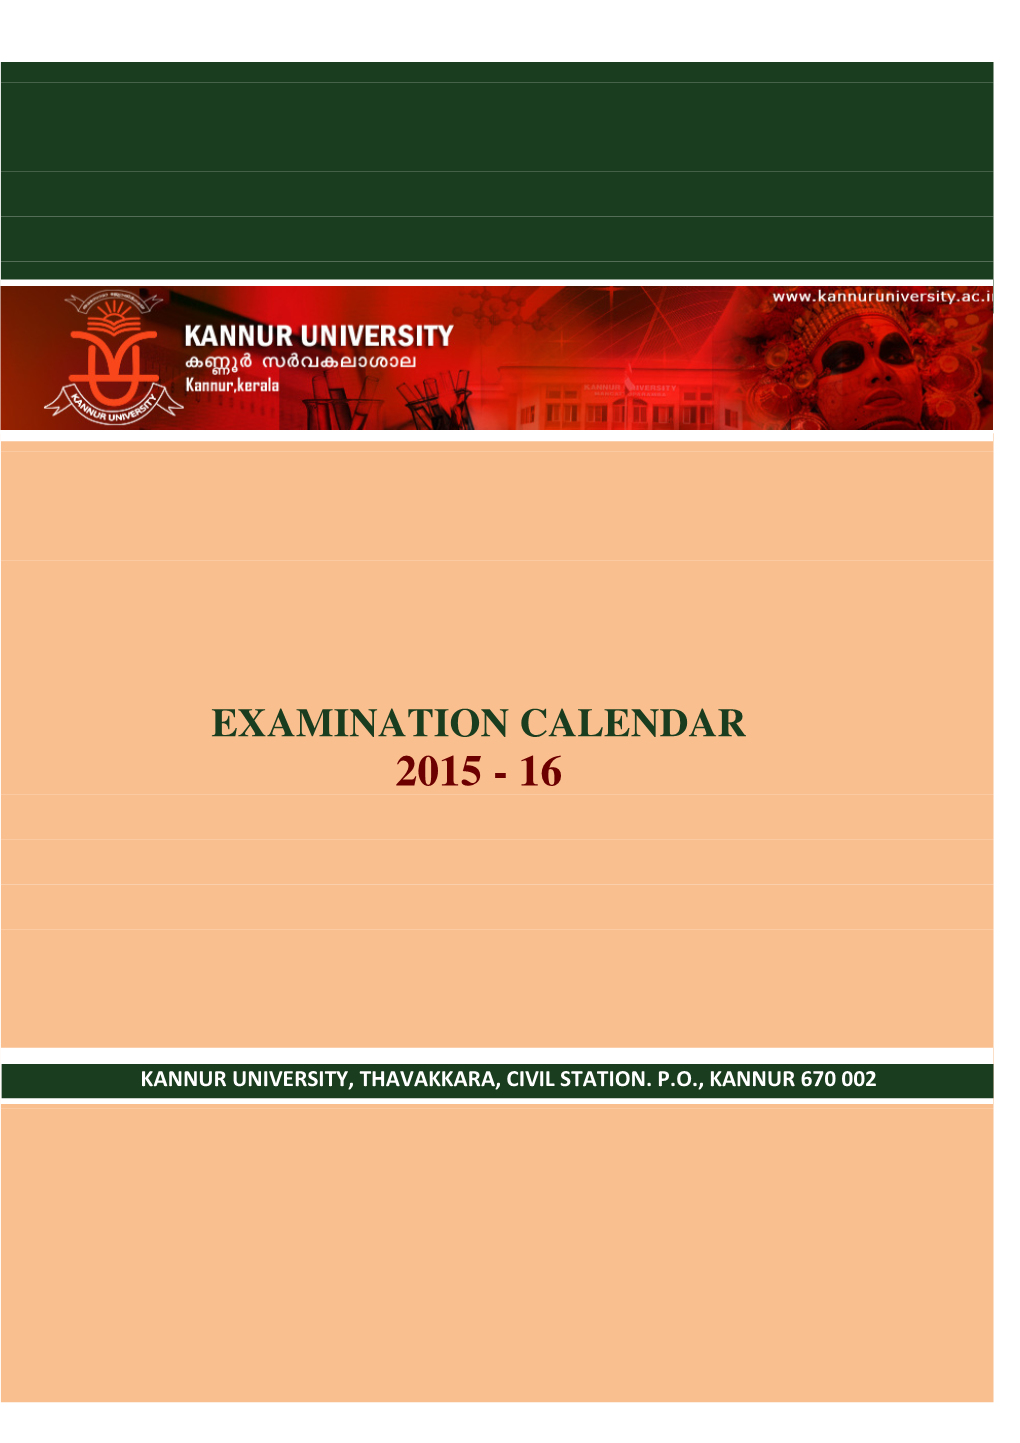 Examination Calendar 2015 - 16